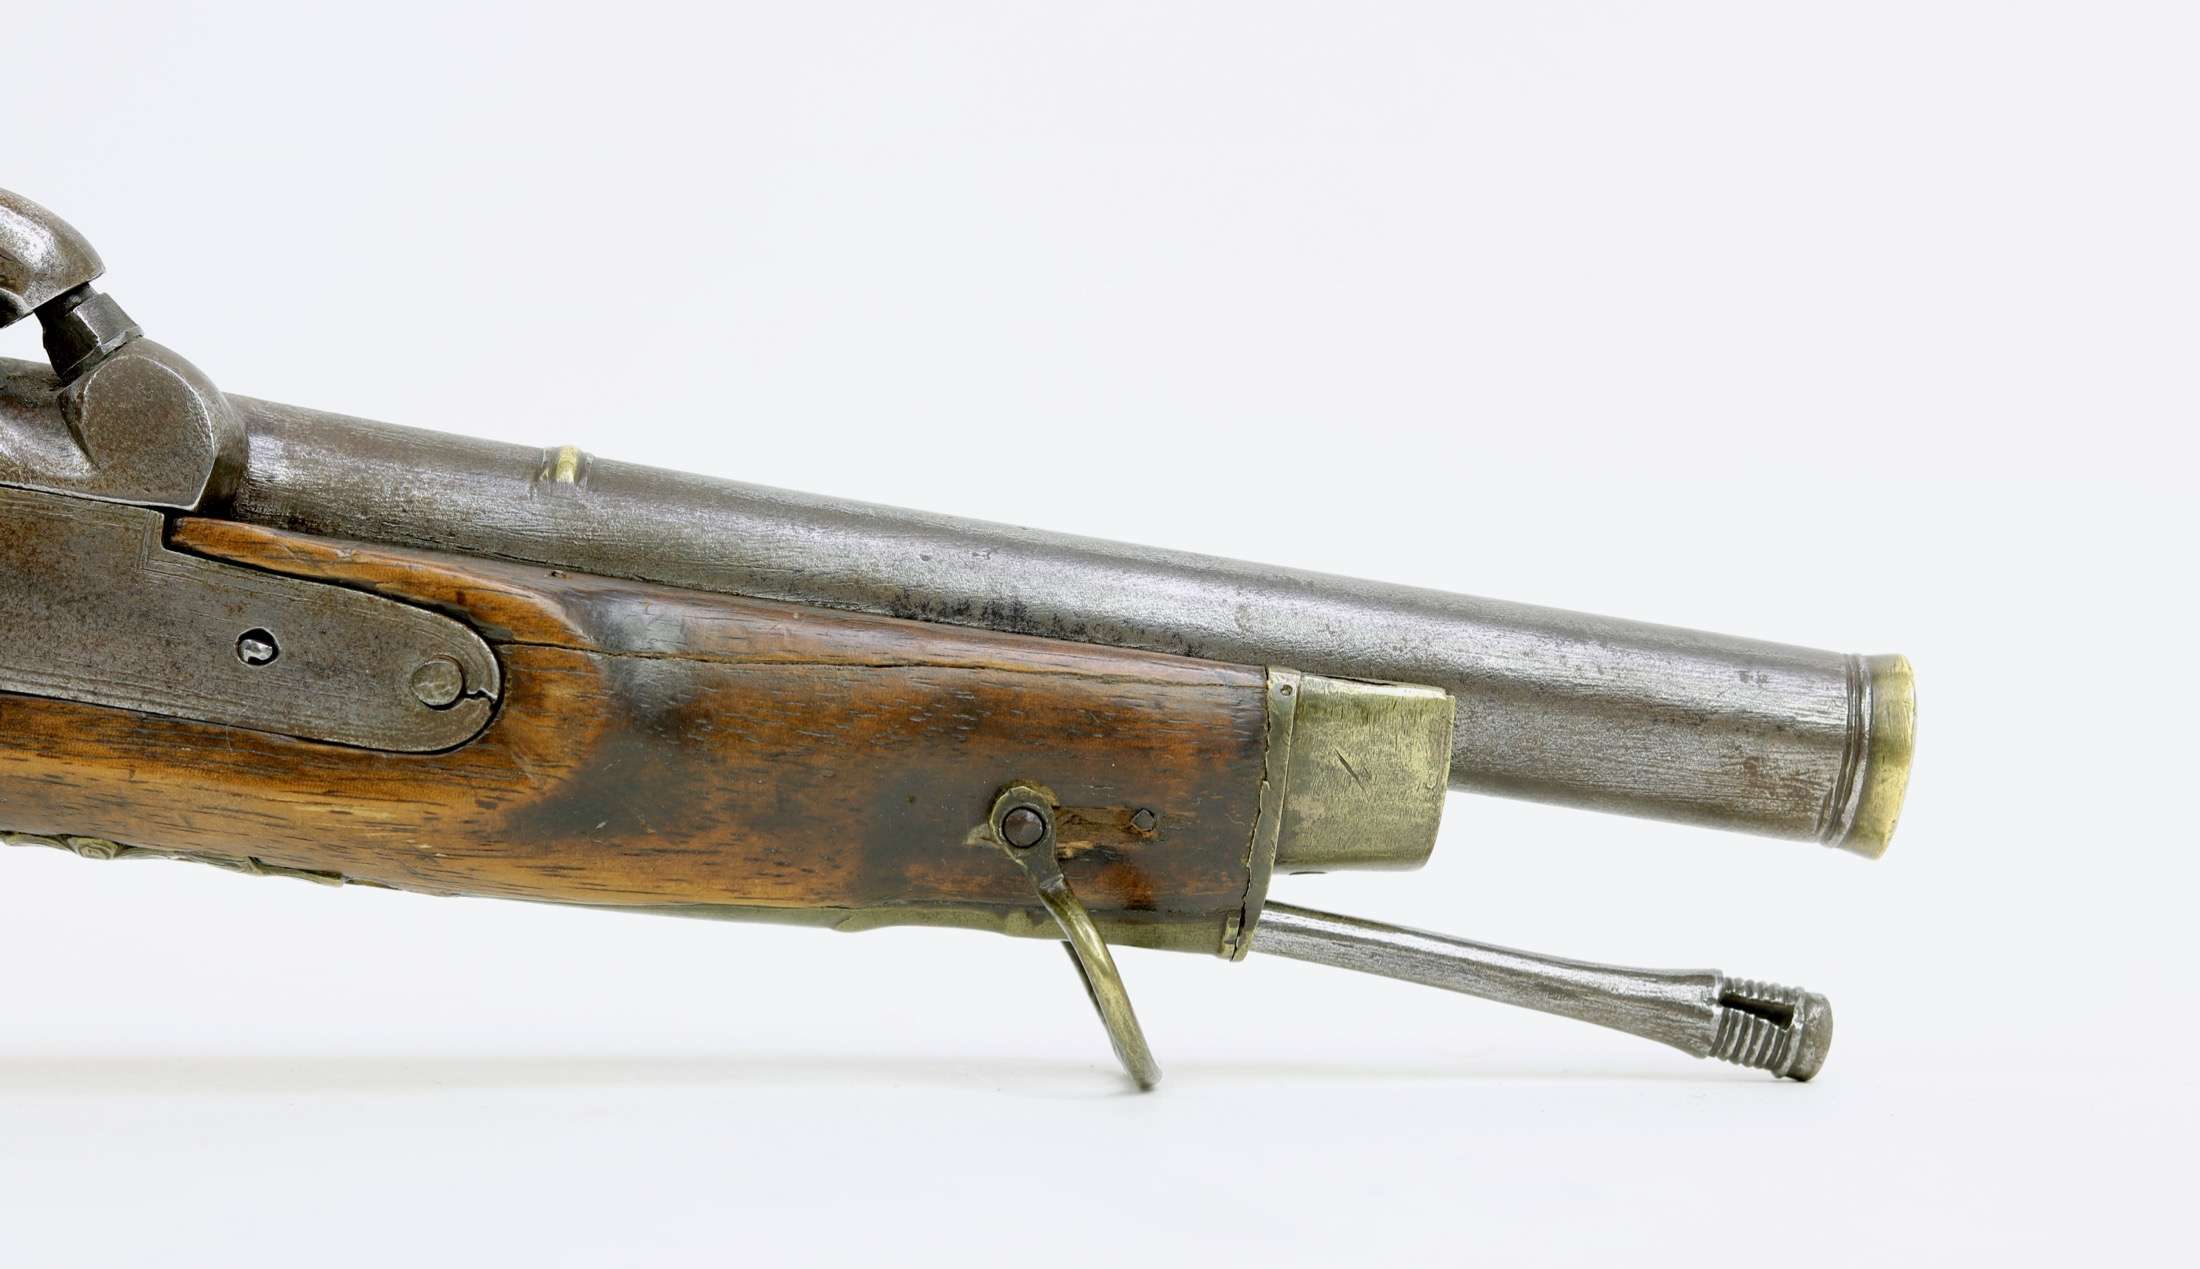 Burmese sword carbine